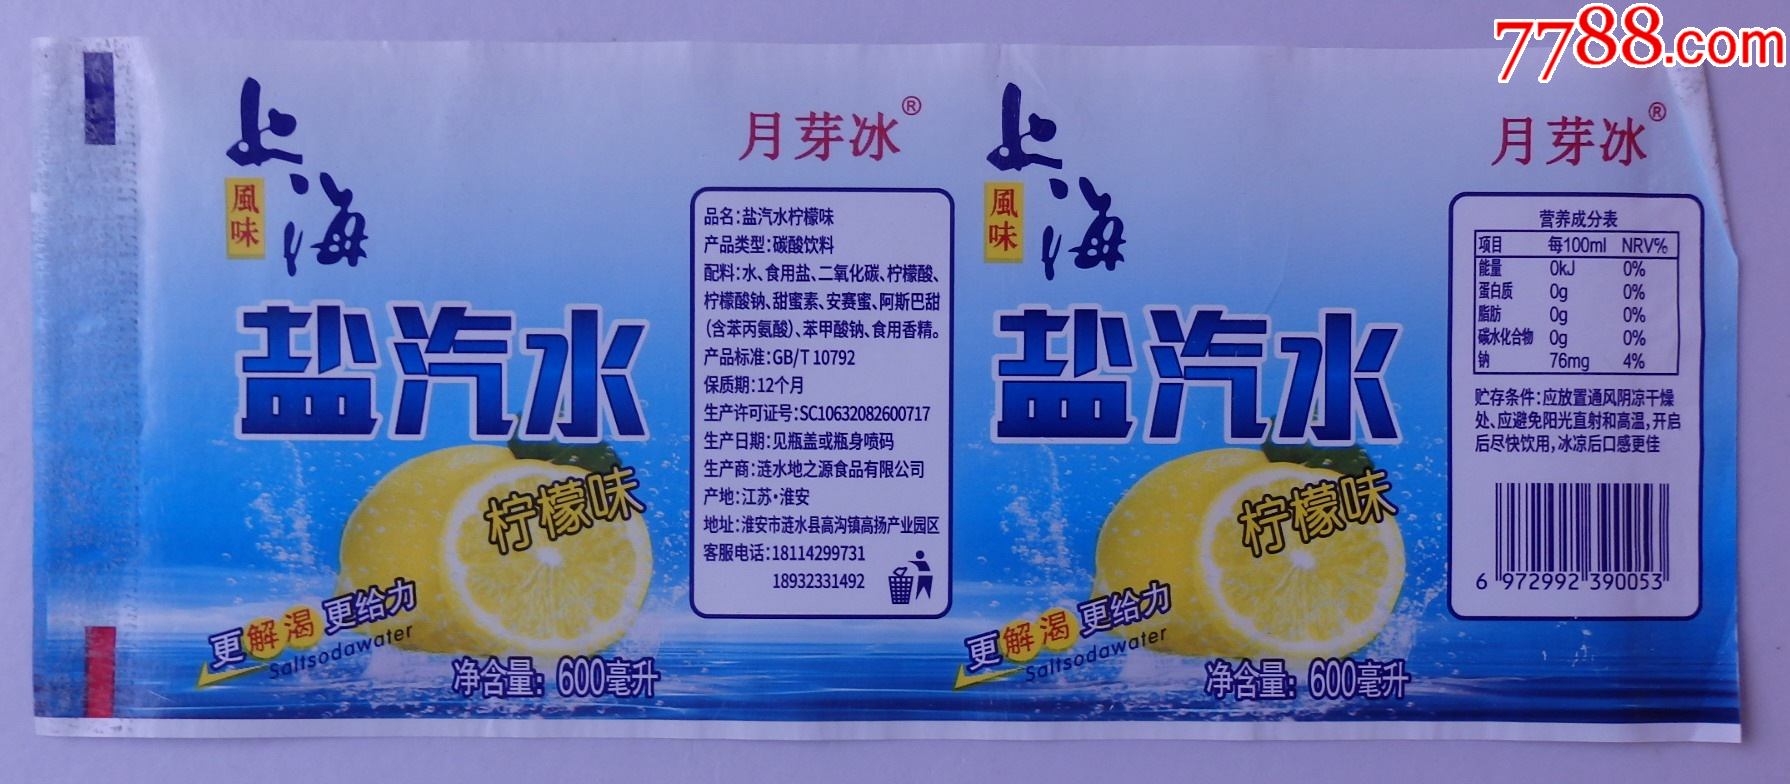 上海风味盐汽水-更解渴更给力柠檬味600毫升商标1枚-月芽冰